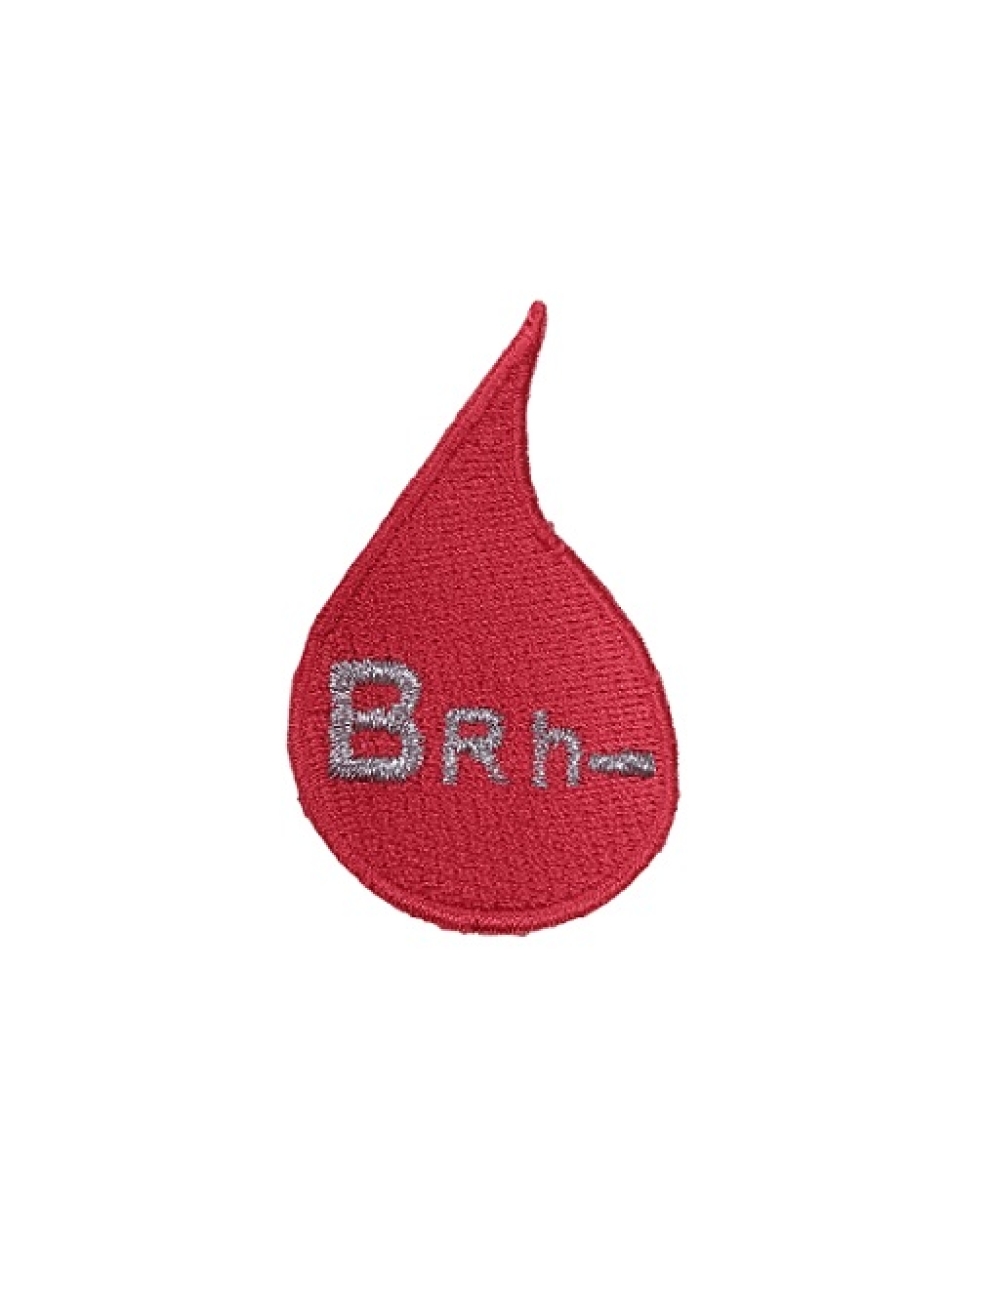 Gota de Sangue - B RH -